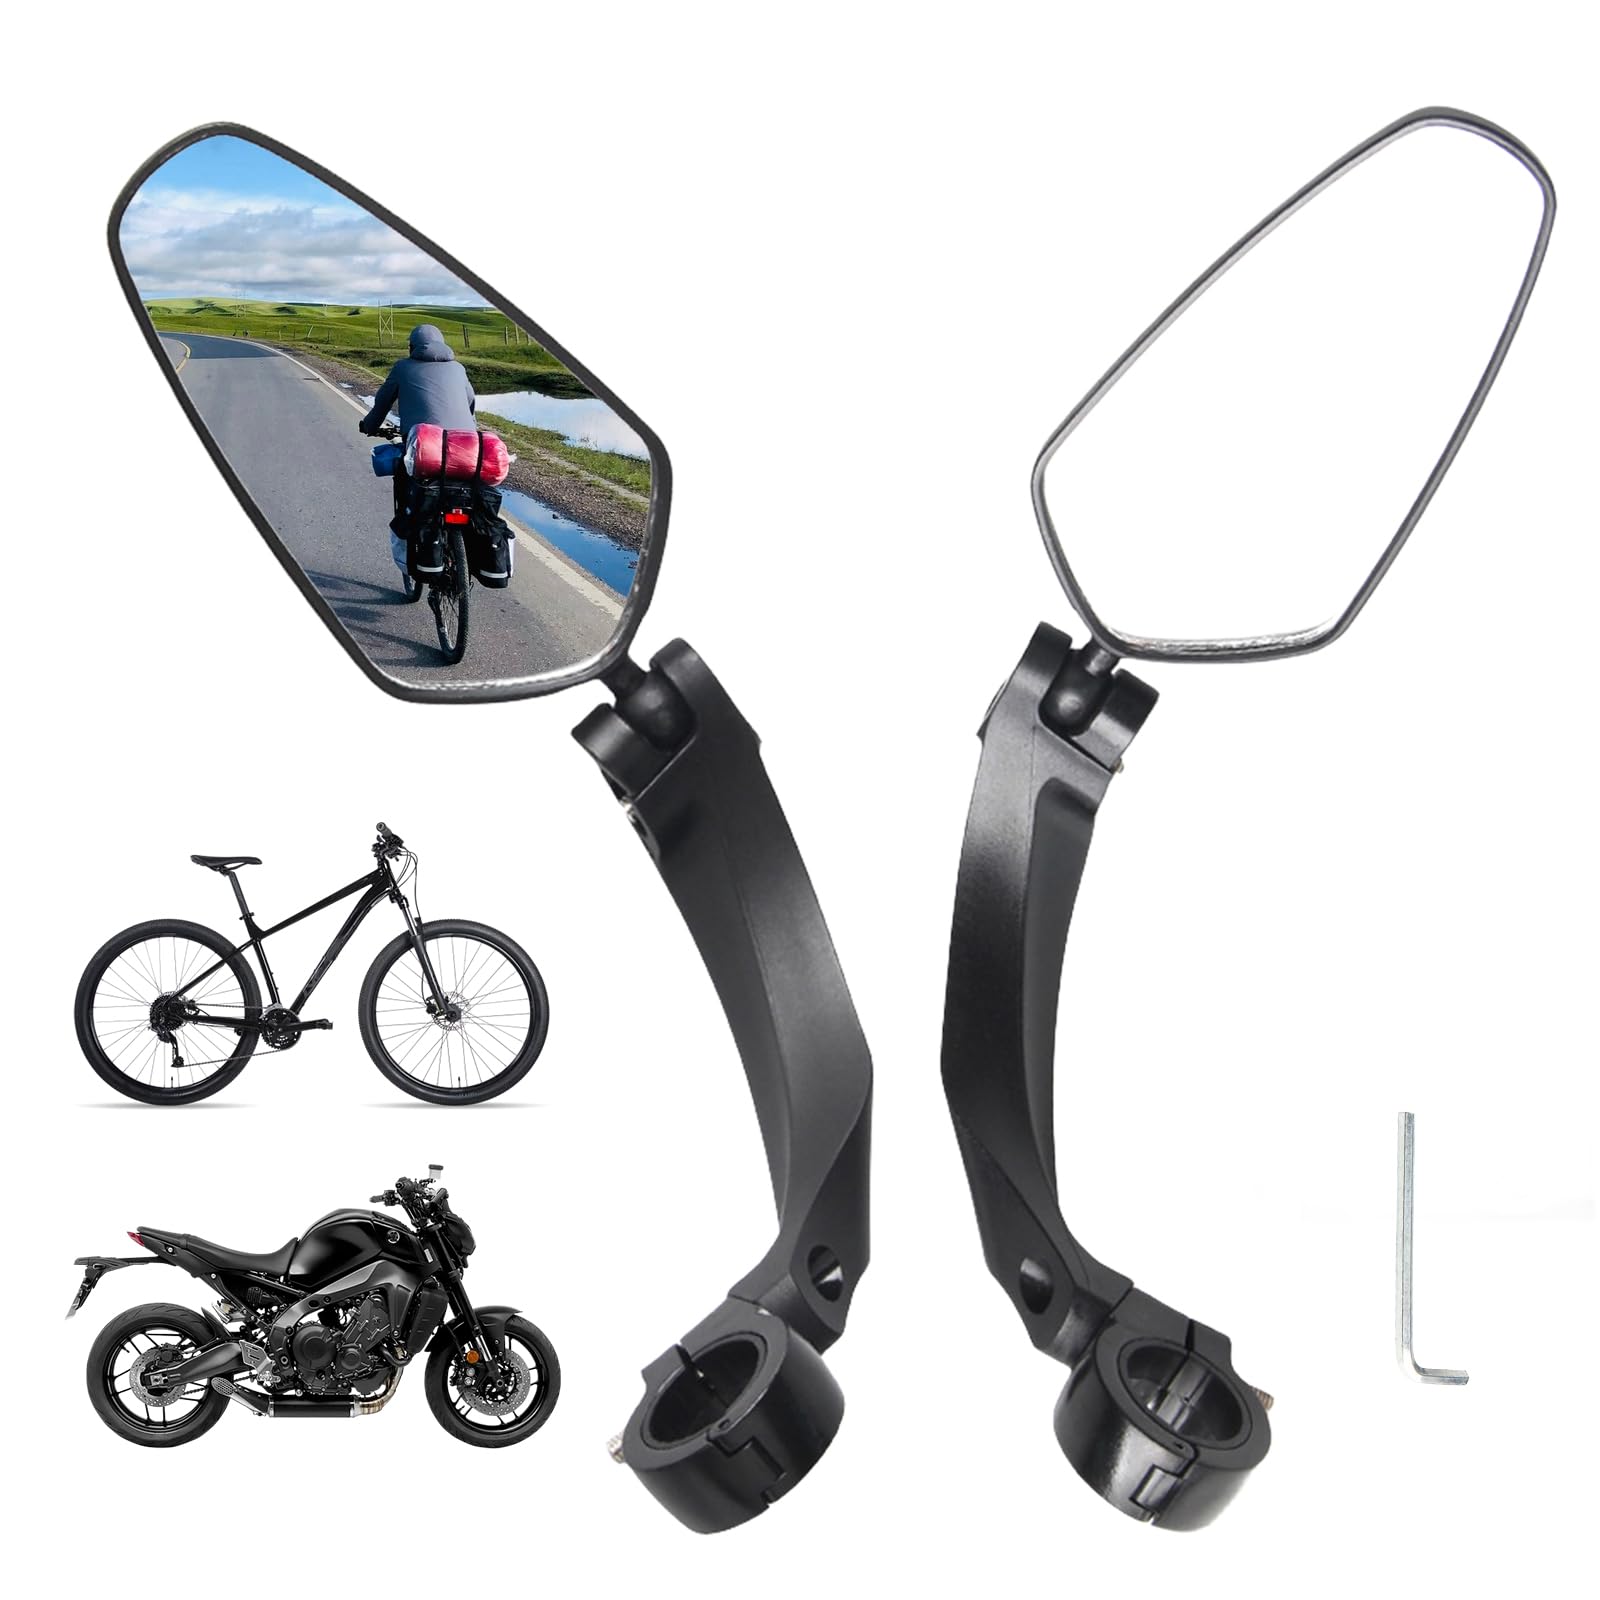 Fahrradspiegel, 2 Stück Fahrrad Rückspiegel, HD 360° Verstellbarer Fahrrad Spiegel Ebike Zubehör, Extra Große Spiegelfläche Fahrradspiegel Klappbar für Mountainbikes Rennräder (Links + Rechts) von SUNOYA